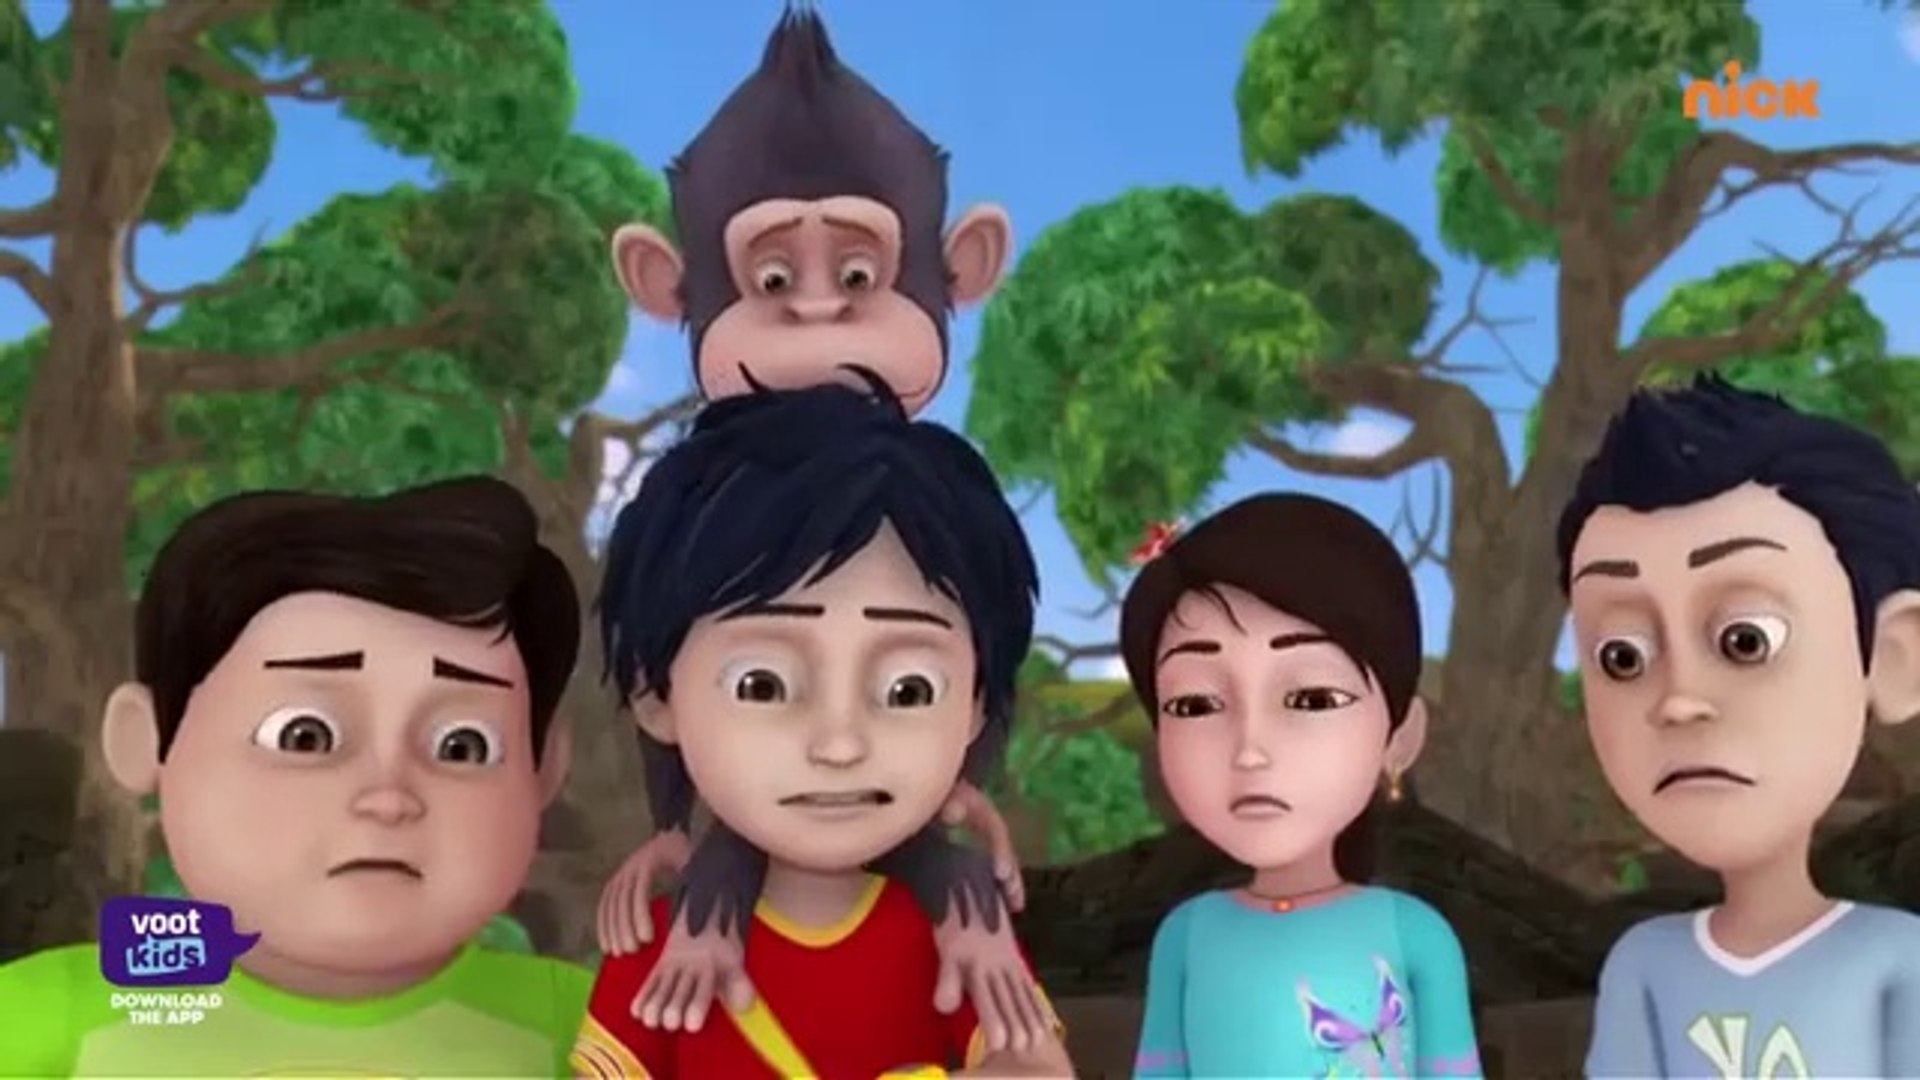 Share: Shiva - शिवा - Baby Chimpanzee - Episode 26 - shiva cartoon,siva  cartoon,kids cartoon,mou patlu cartoon,shiva acrtoon,kartun  shiva,shiva,shiva in tamil,shiva voot kids,shiva shiva,shiva new  episode,shiva videos for kids,rudra cartoon,cartoon ...